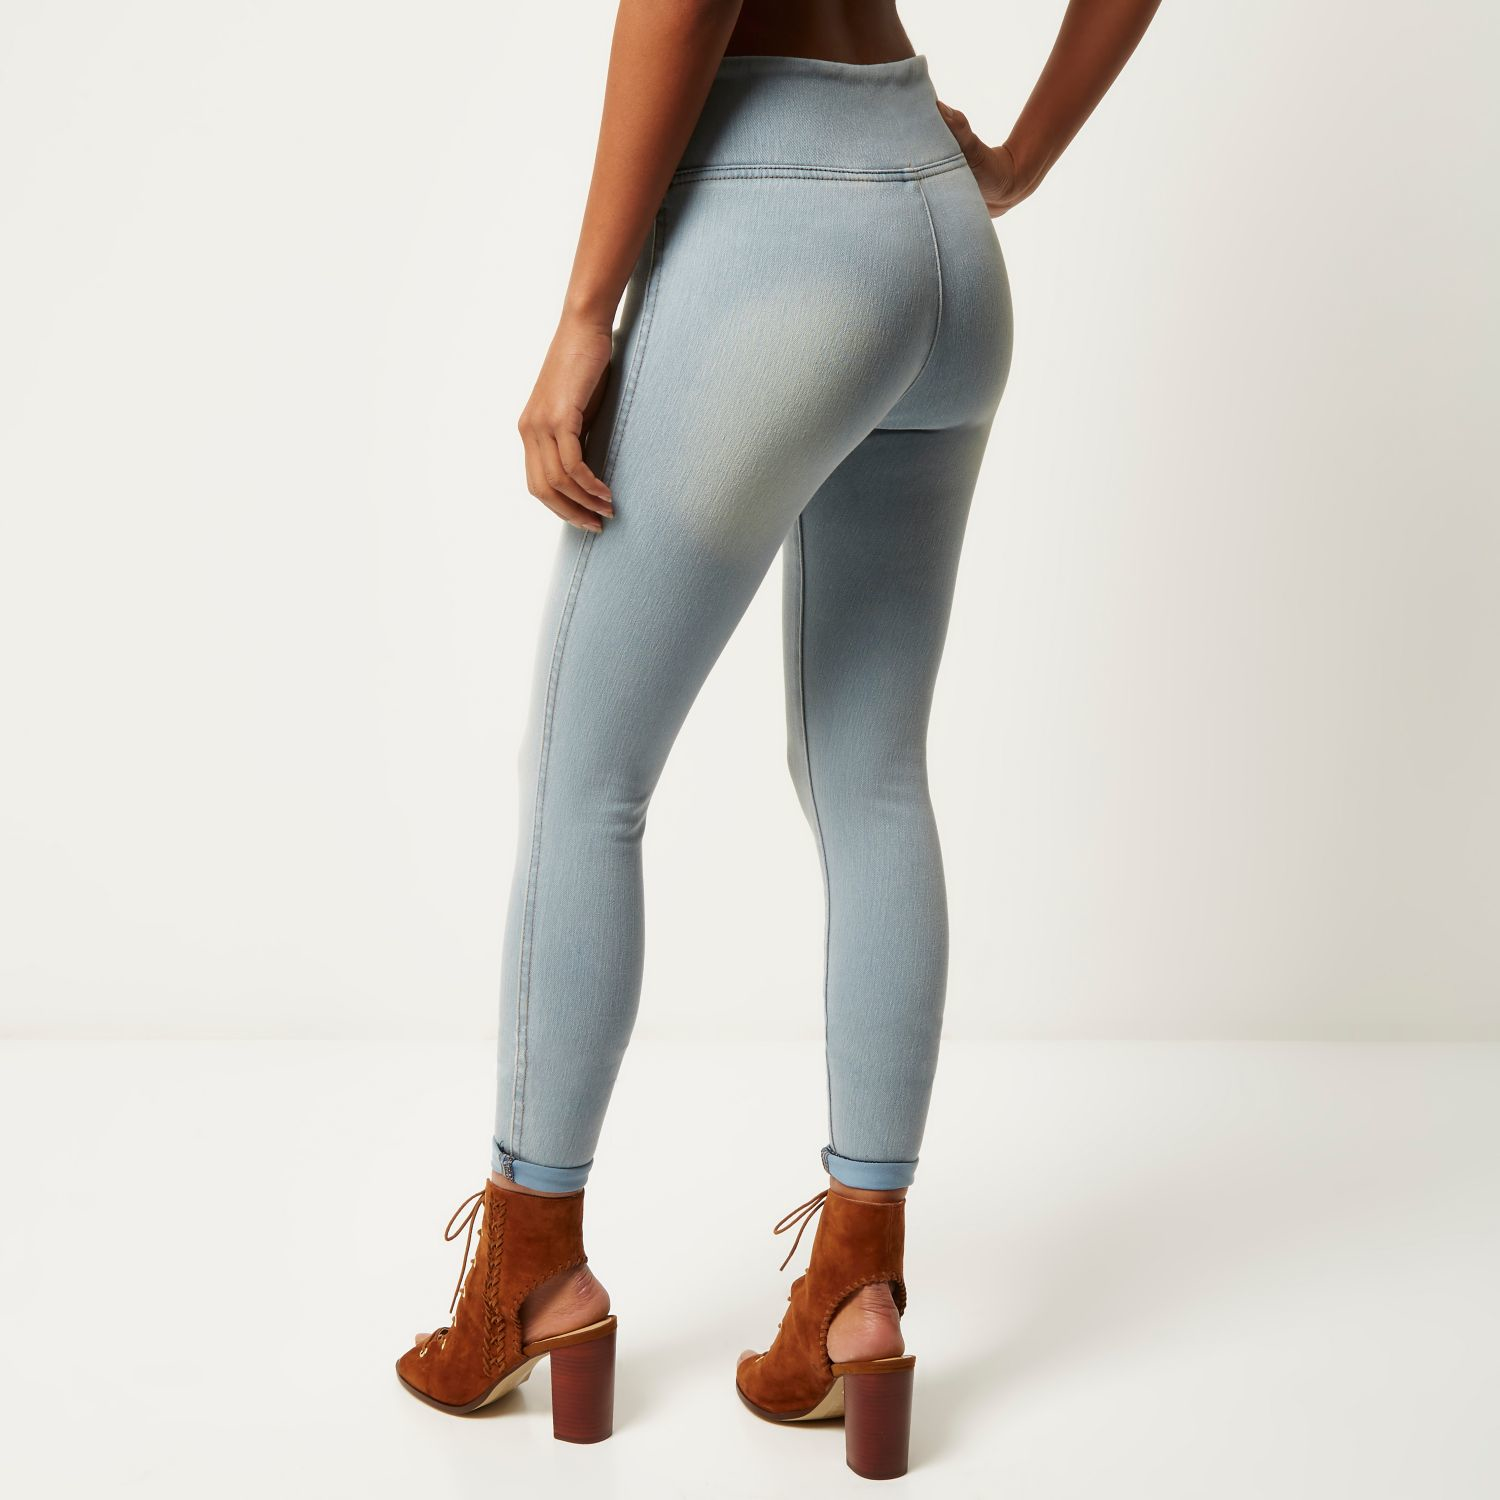 high waisted jean leggings for women